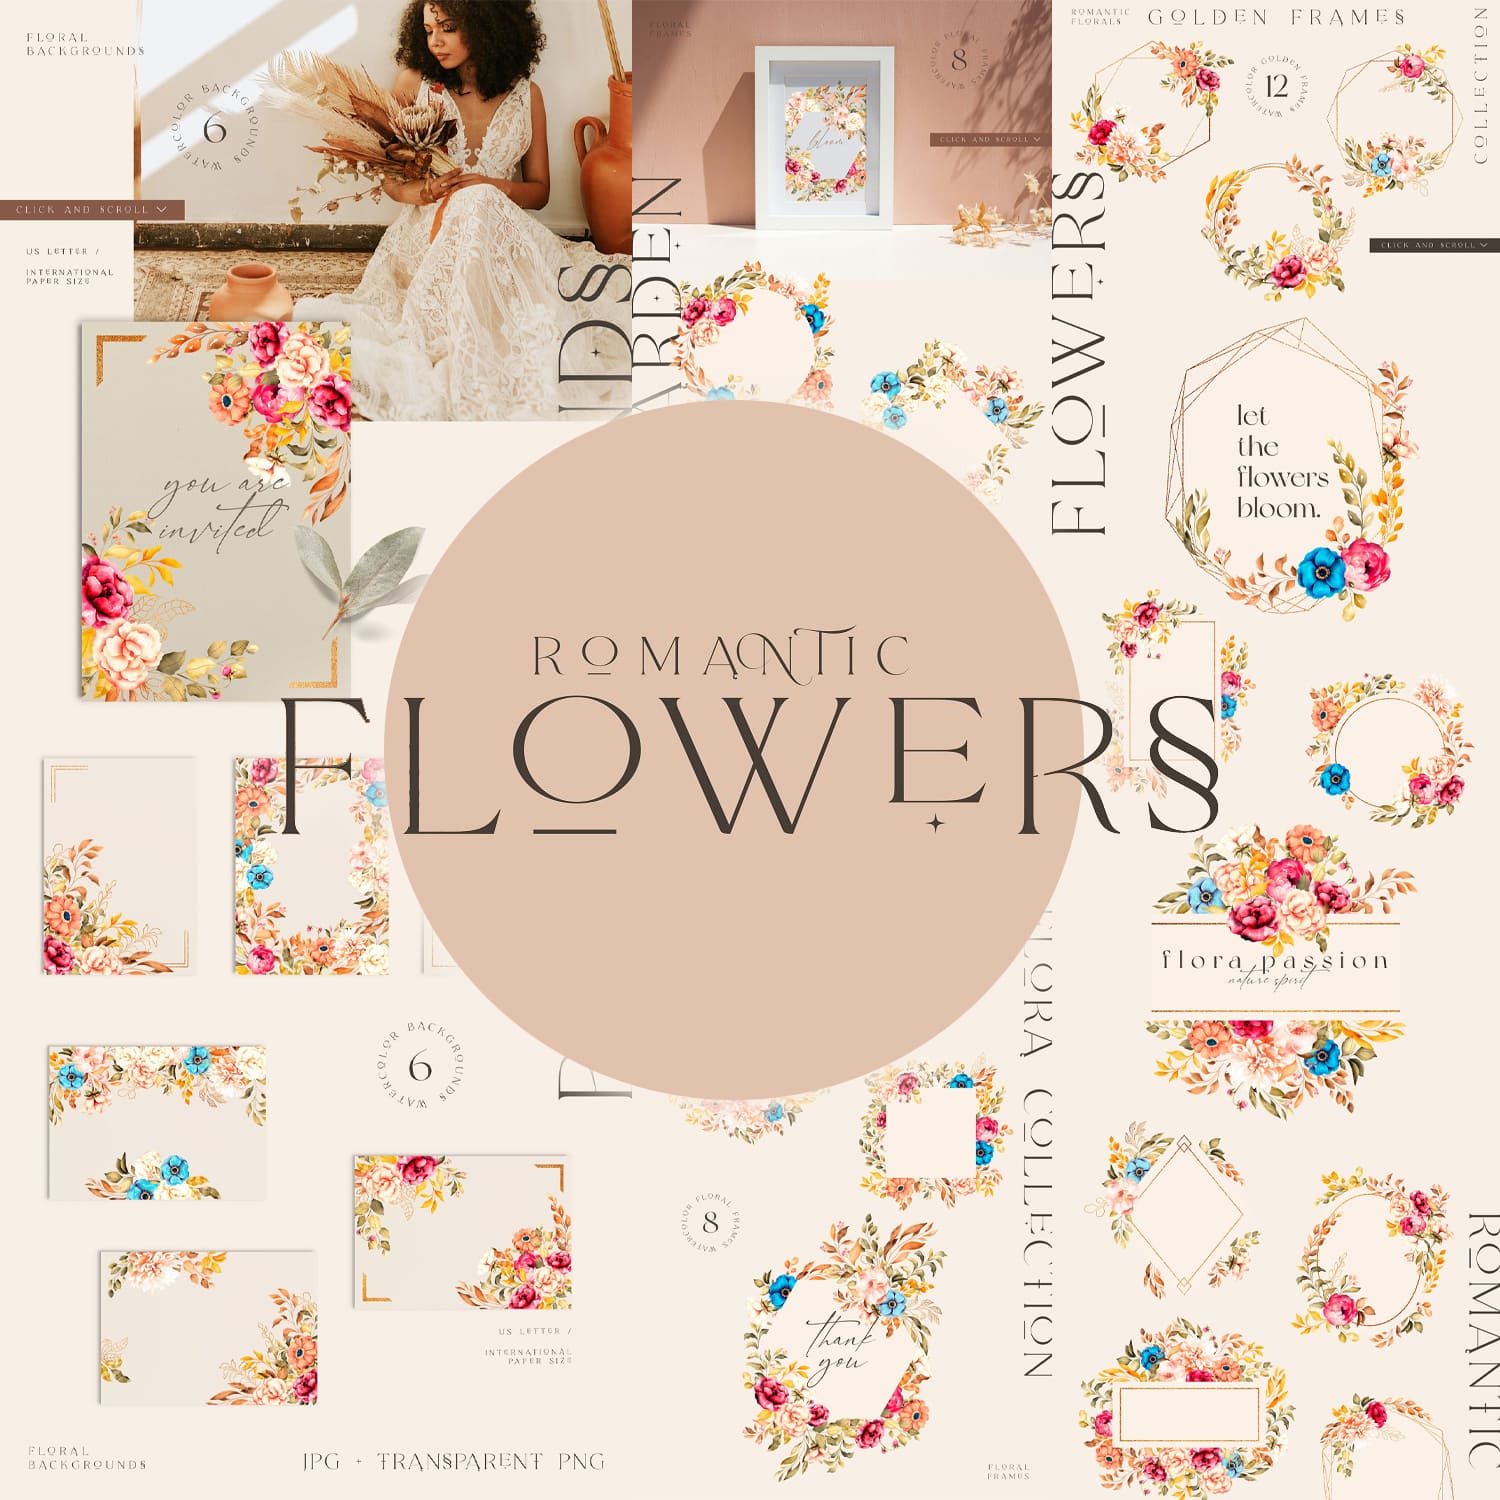 Unique images with floral frames.